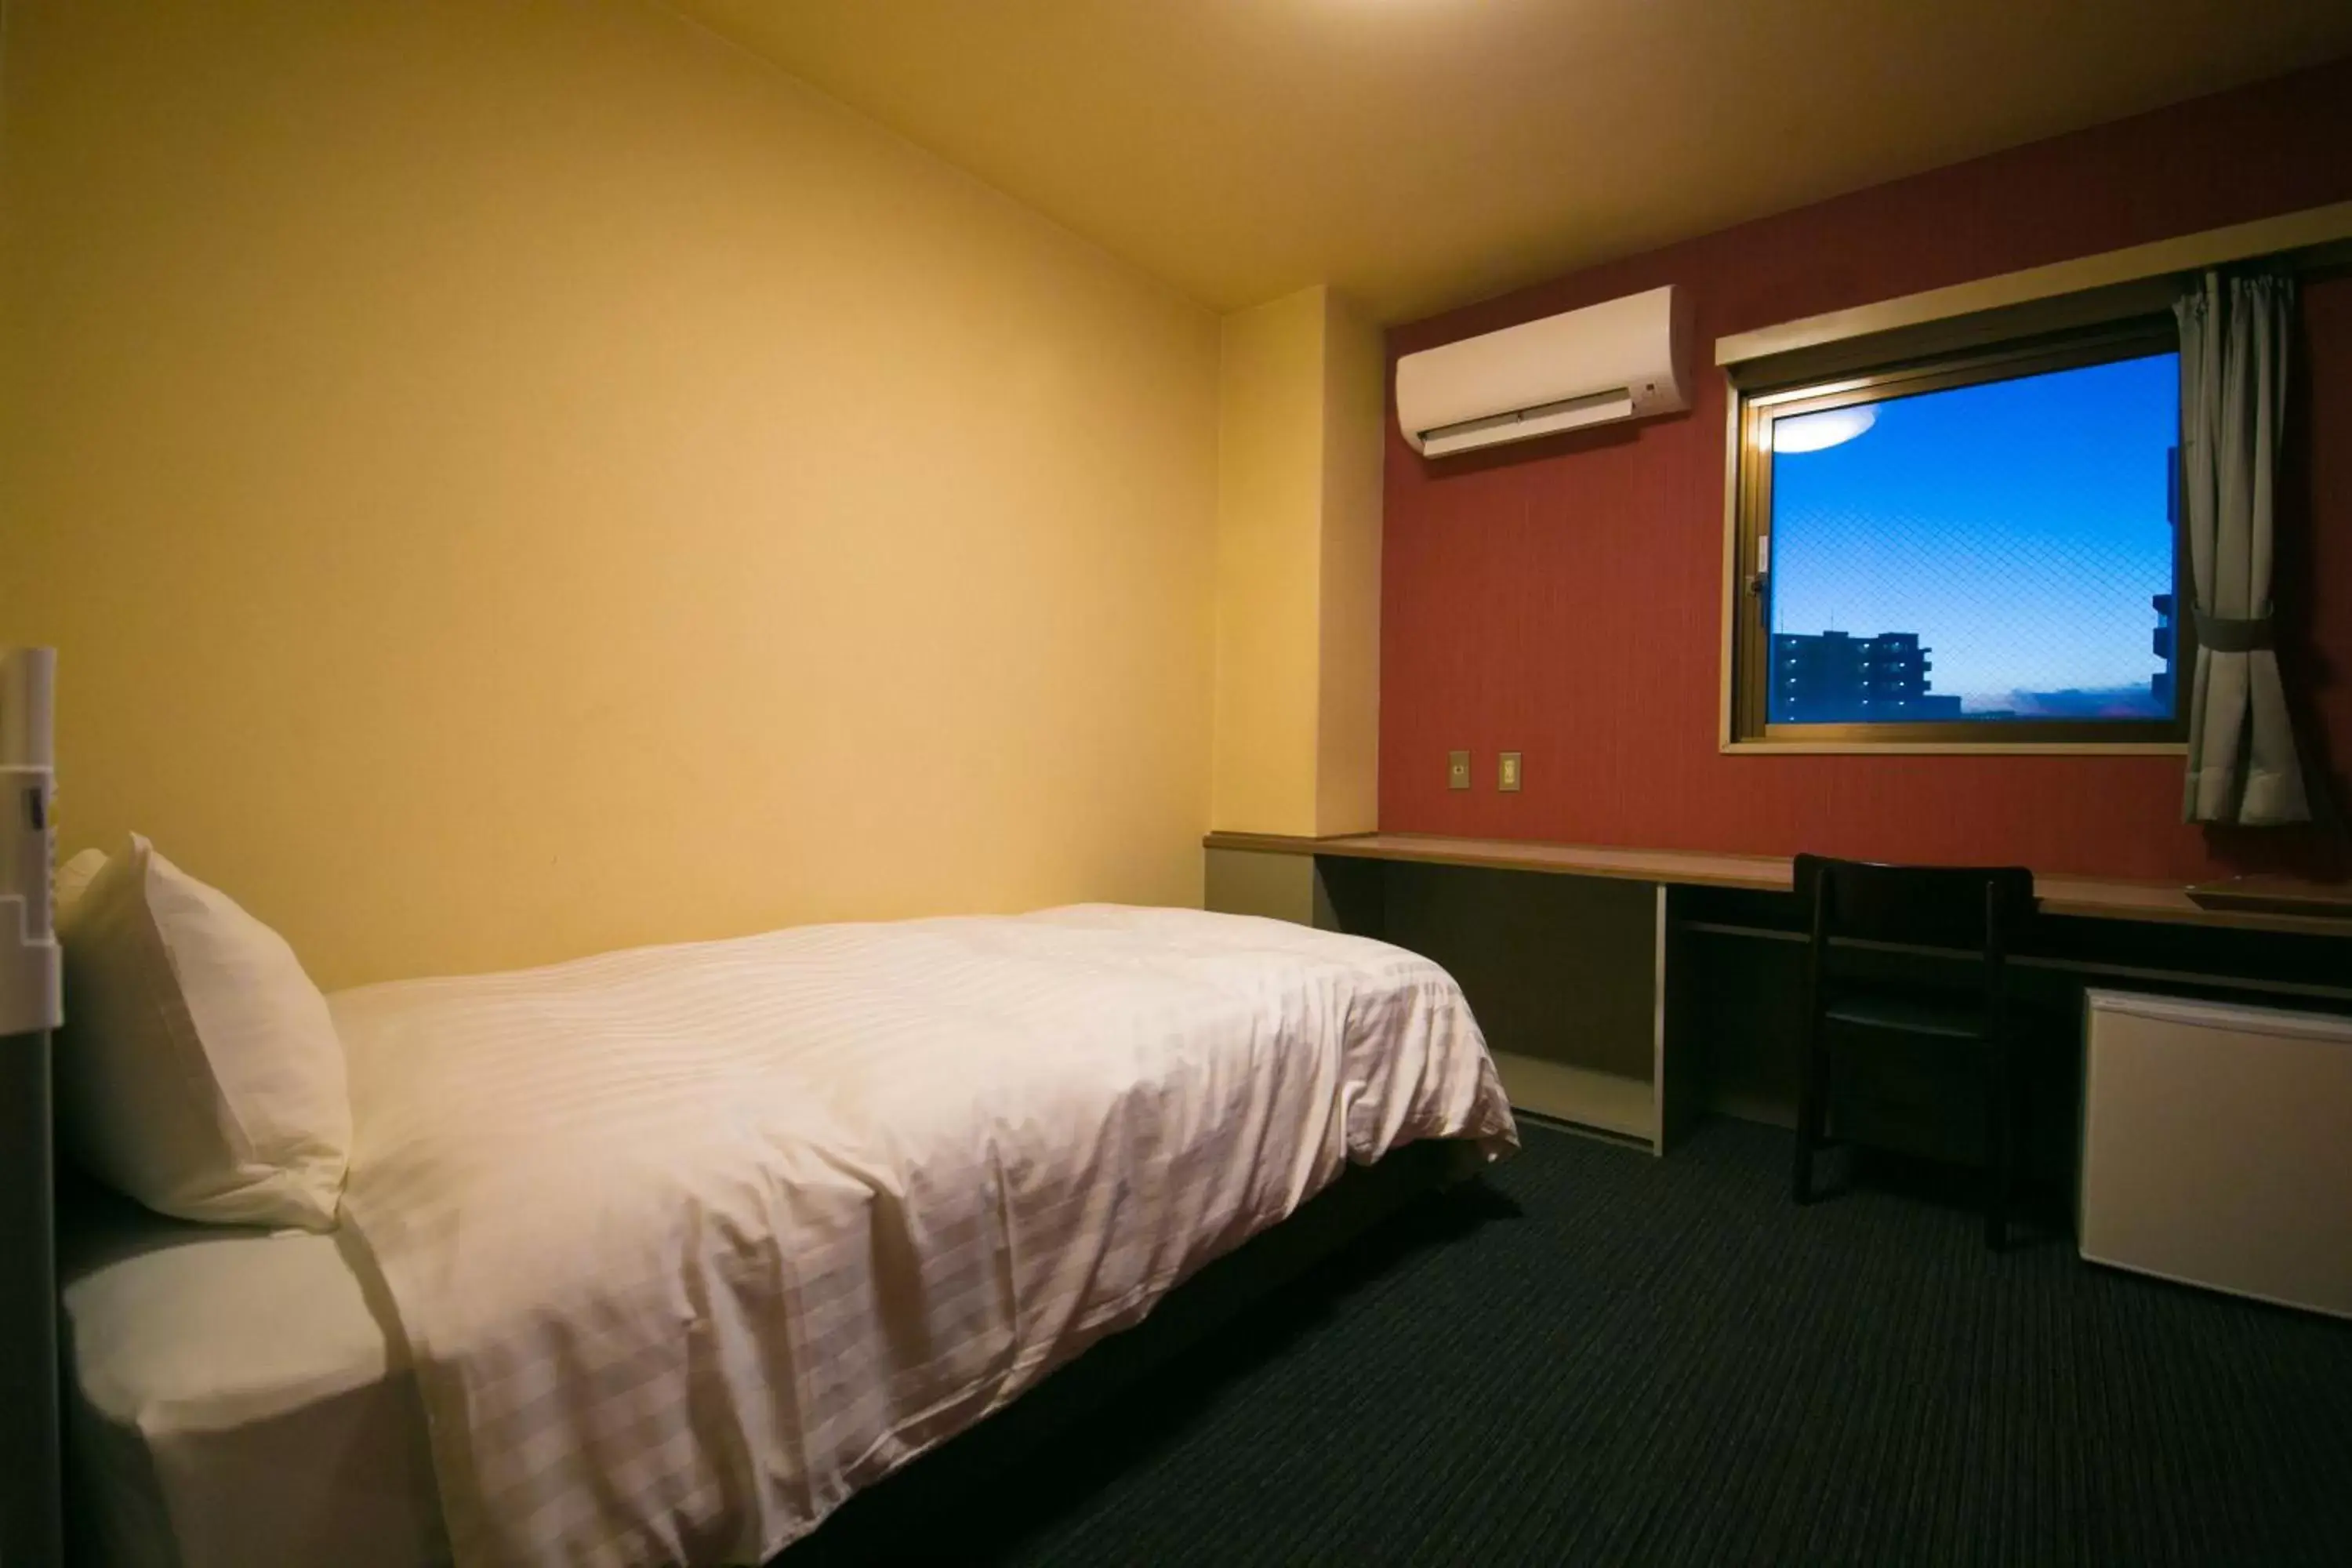 Bedroom, Room Photo in HOTEL 910